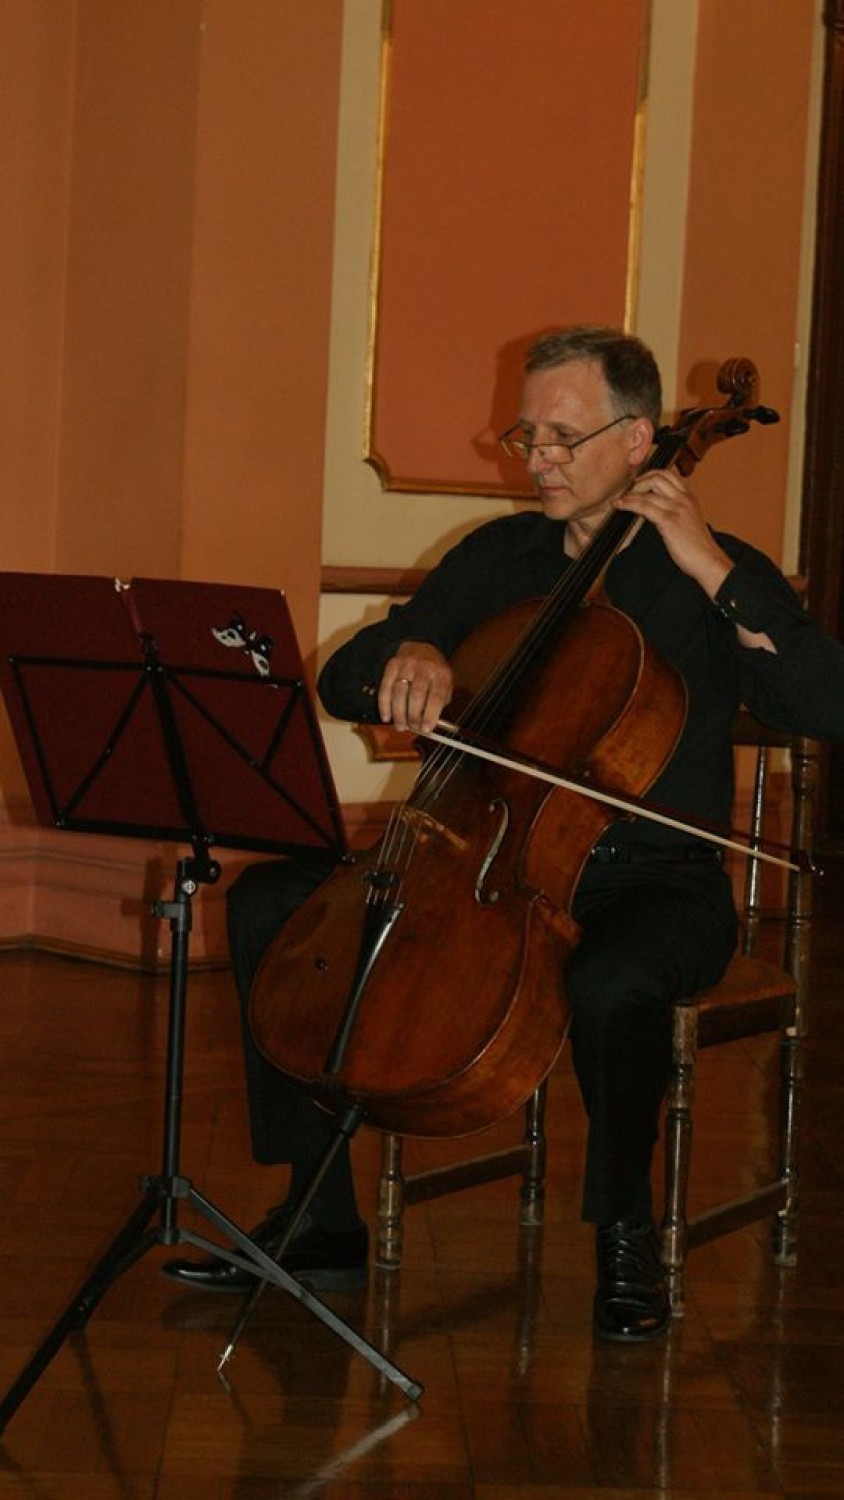 Koncert w Kaliszu. Wieniawski Kwartet wystąpił w Sali...